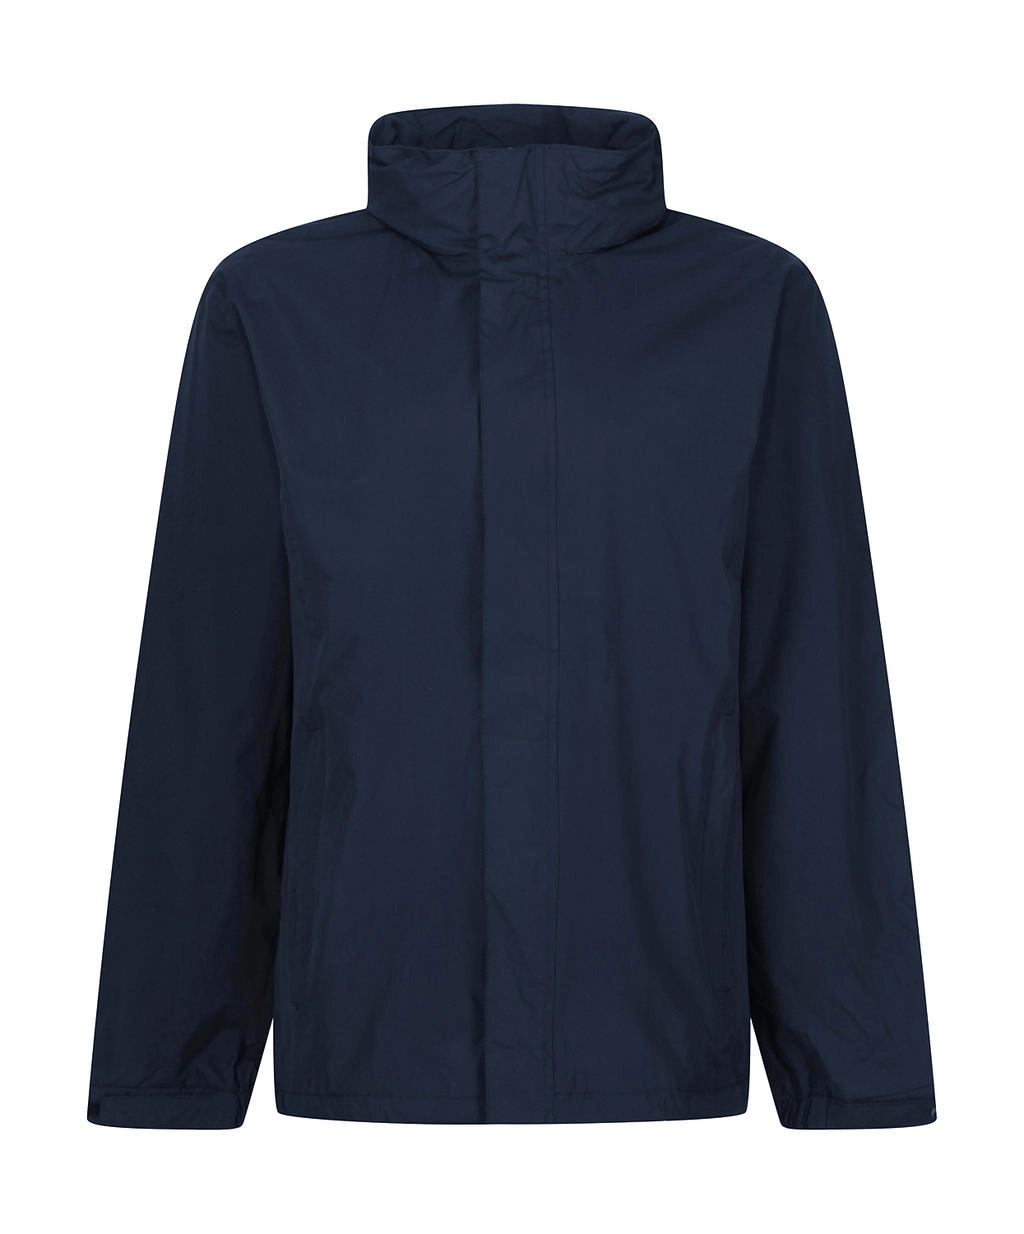 Ardmore Jacket zum Besticken und Bedrucken in der Farbe Navy mit Ihren Logo, Schriftzug oder Motiv.